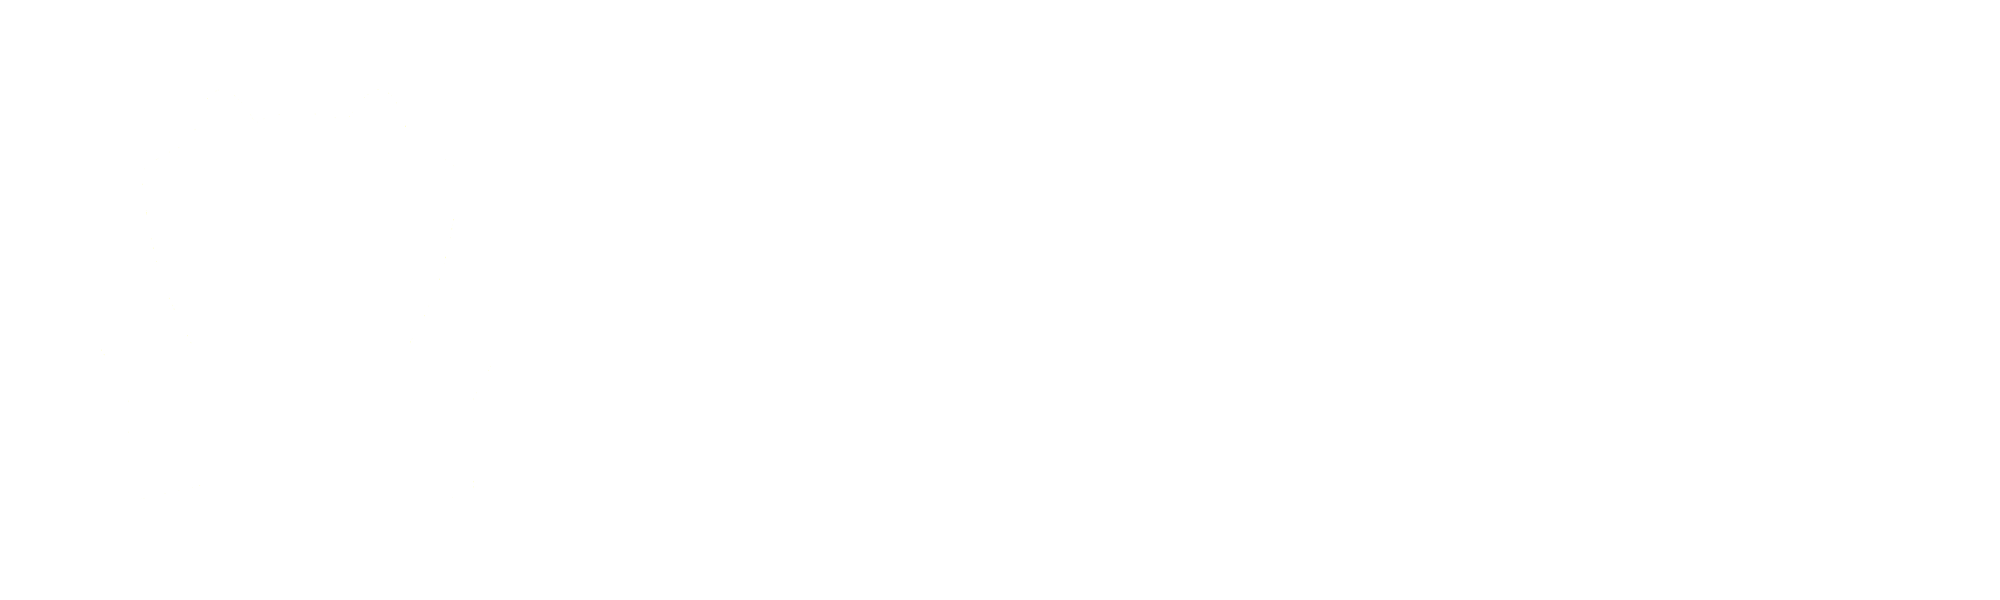 Talent Plzeň Fanshop